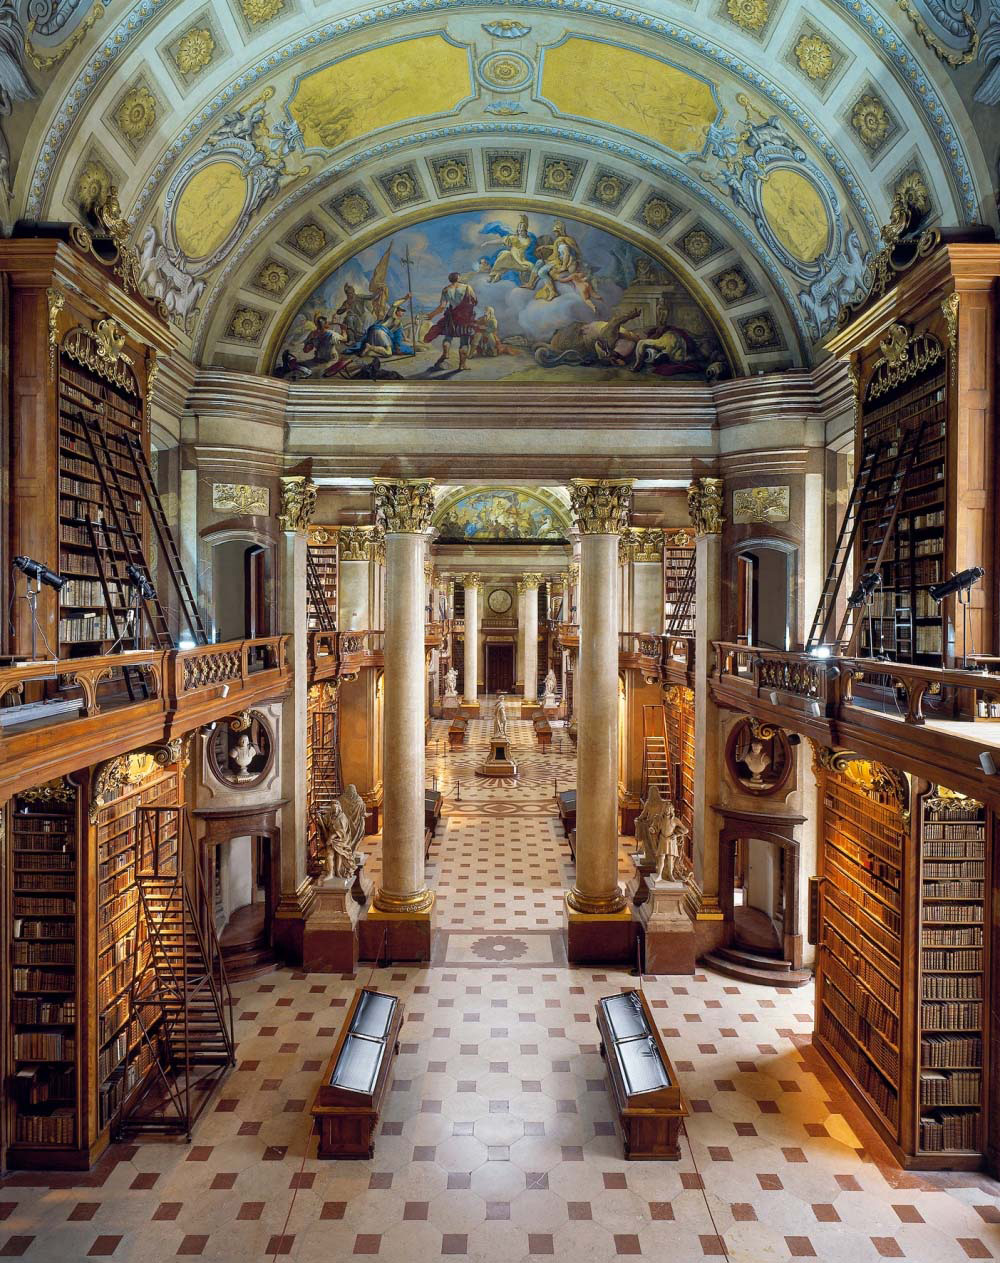 24 bibliotecas del mundo tan magníficas que te dejarán sin respiración